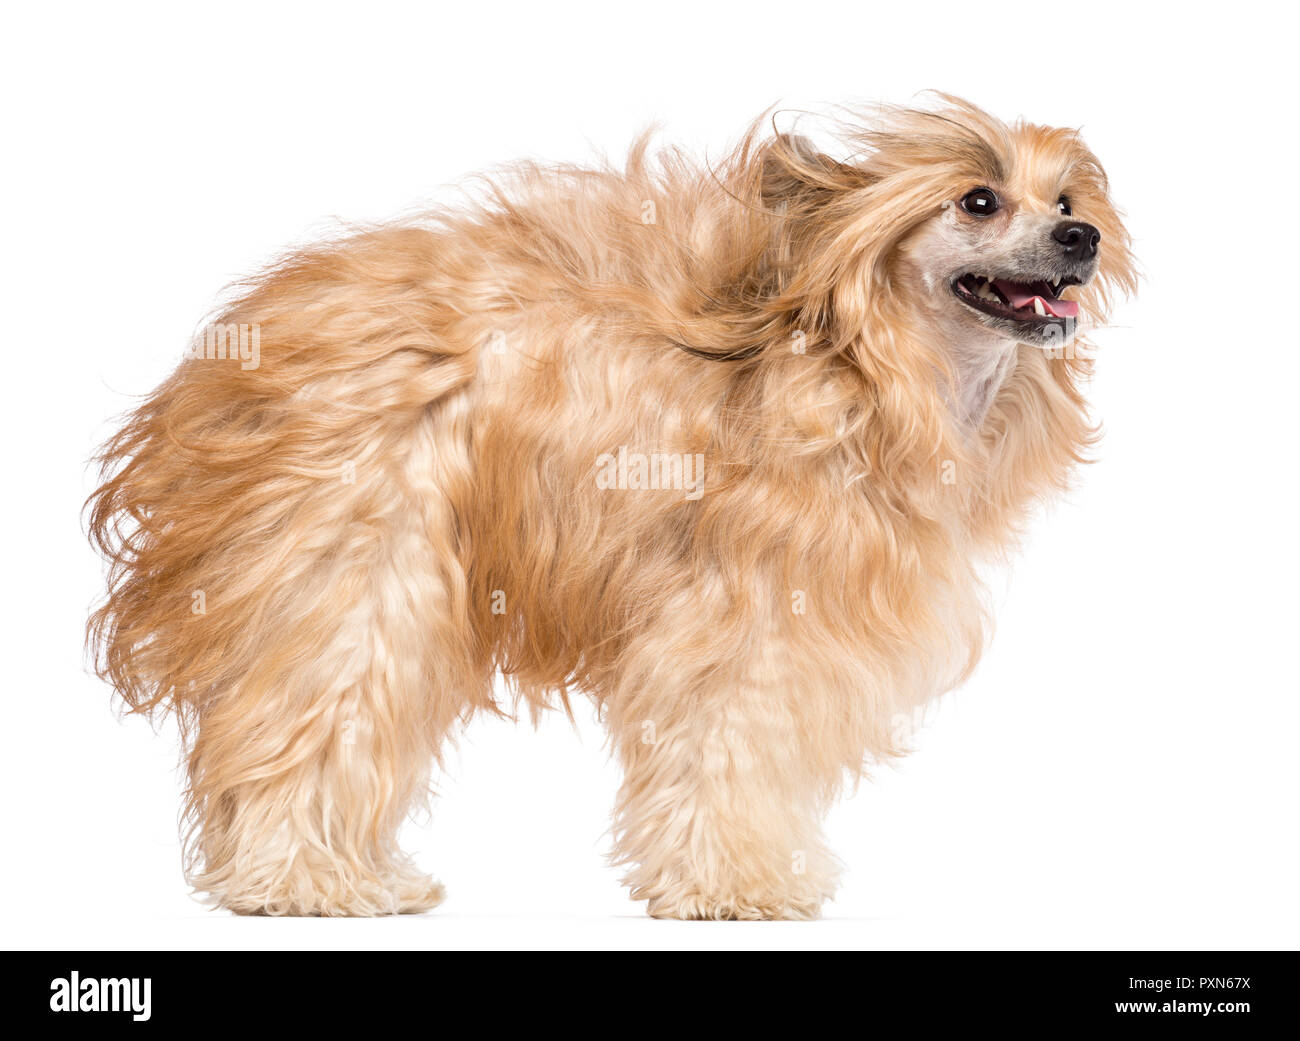 Chinese Crested dog nel vento e guardando lontano contro lo sfondo bianco Foto Stock